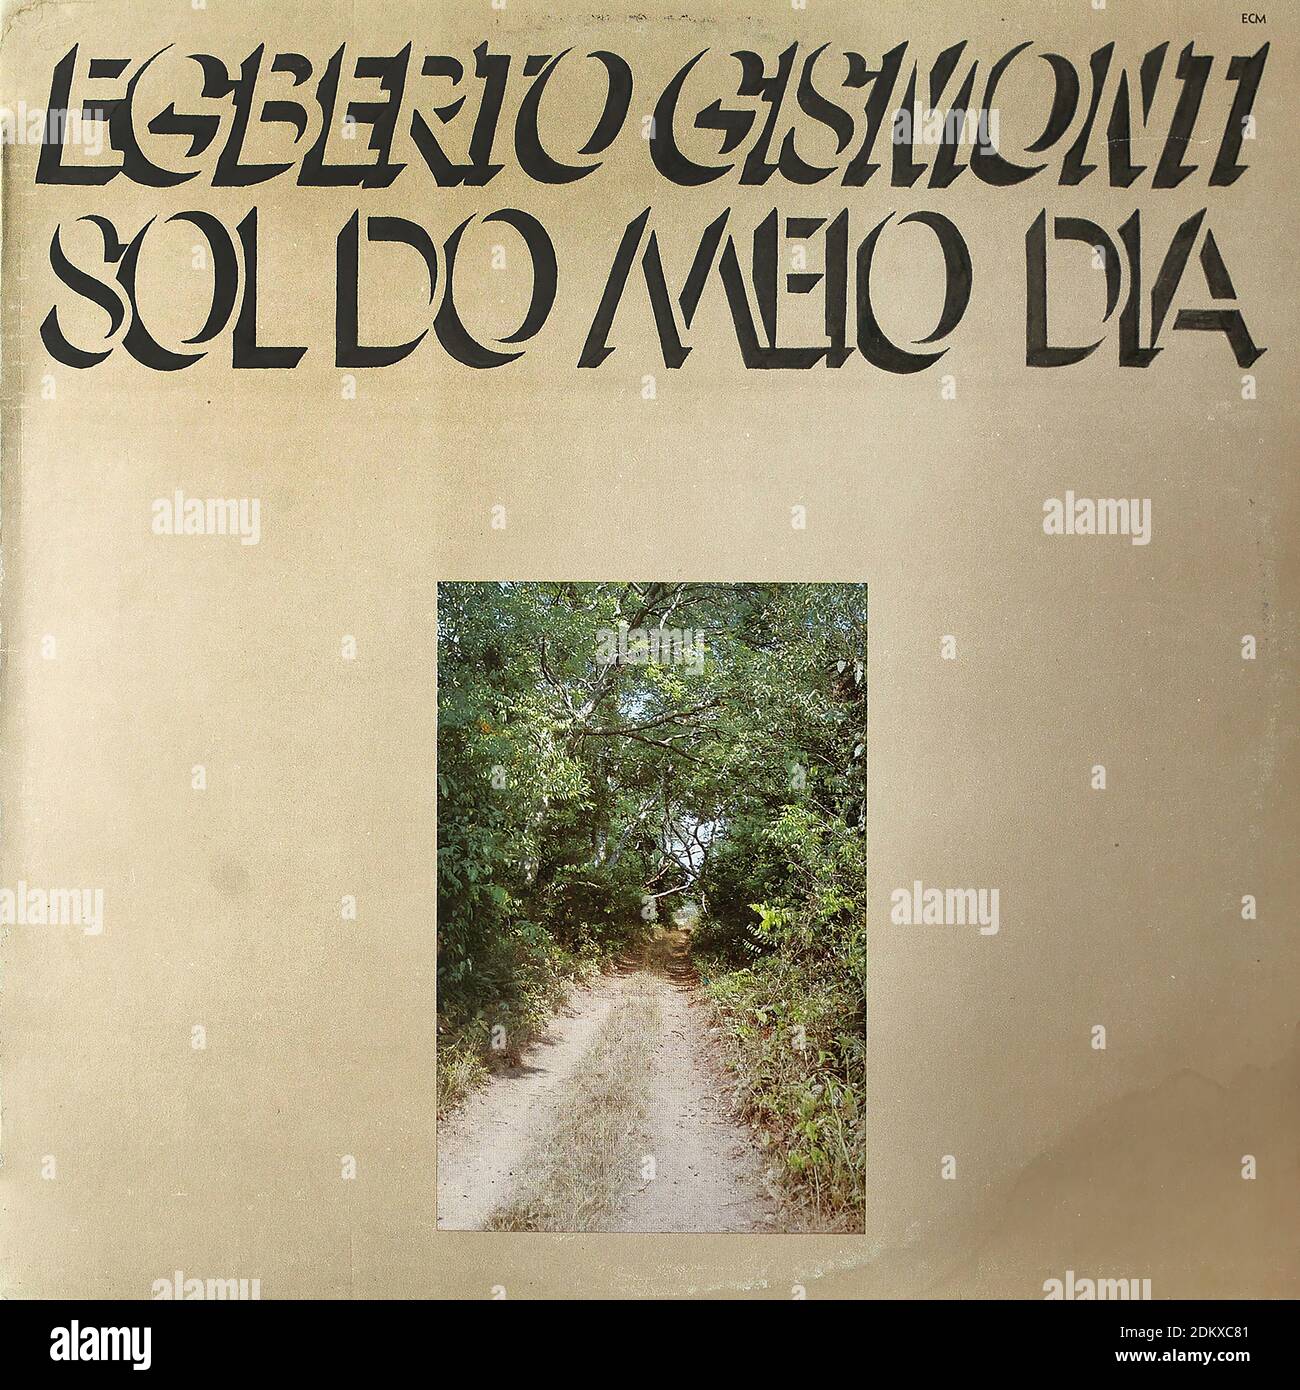 Egberto Gismonti - Sol Do Meio Dia, CM 1116, 1978 - Vintage vinyl album  cover Stock Photo - Alamy